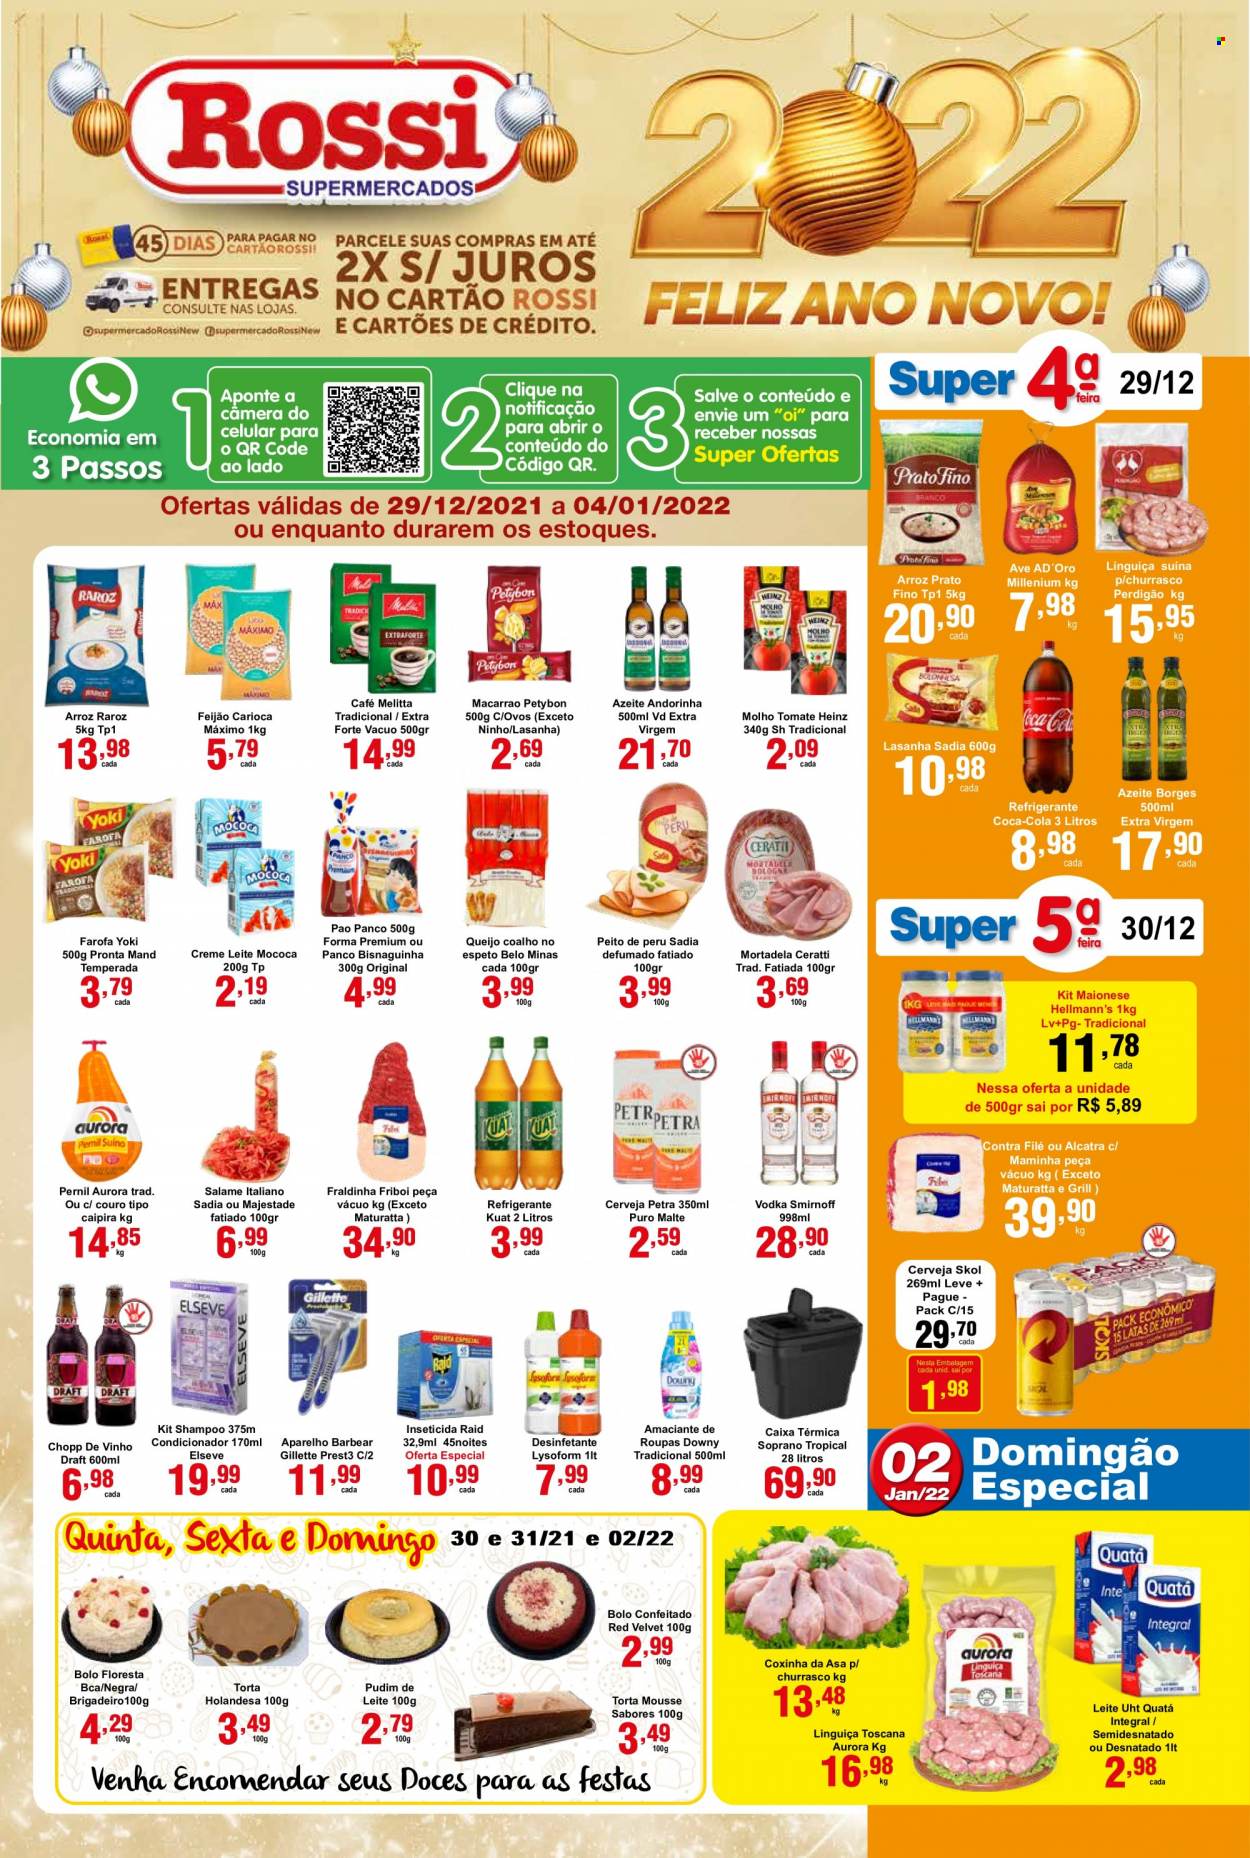 Encarte Rossi Supermercados  - 29.12.2021 - 04.01.2022.